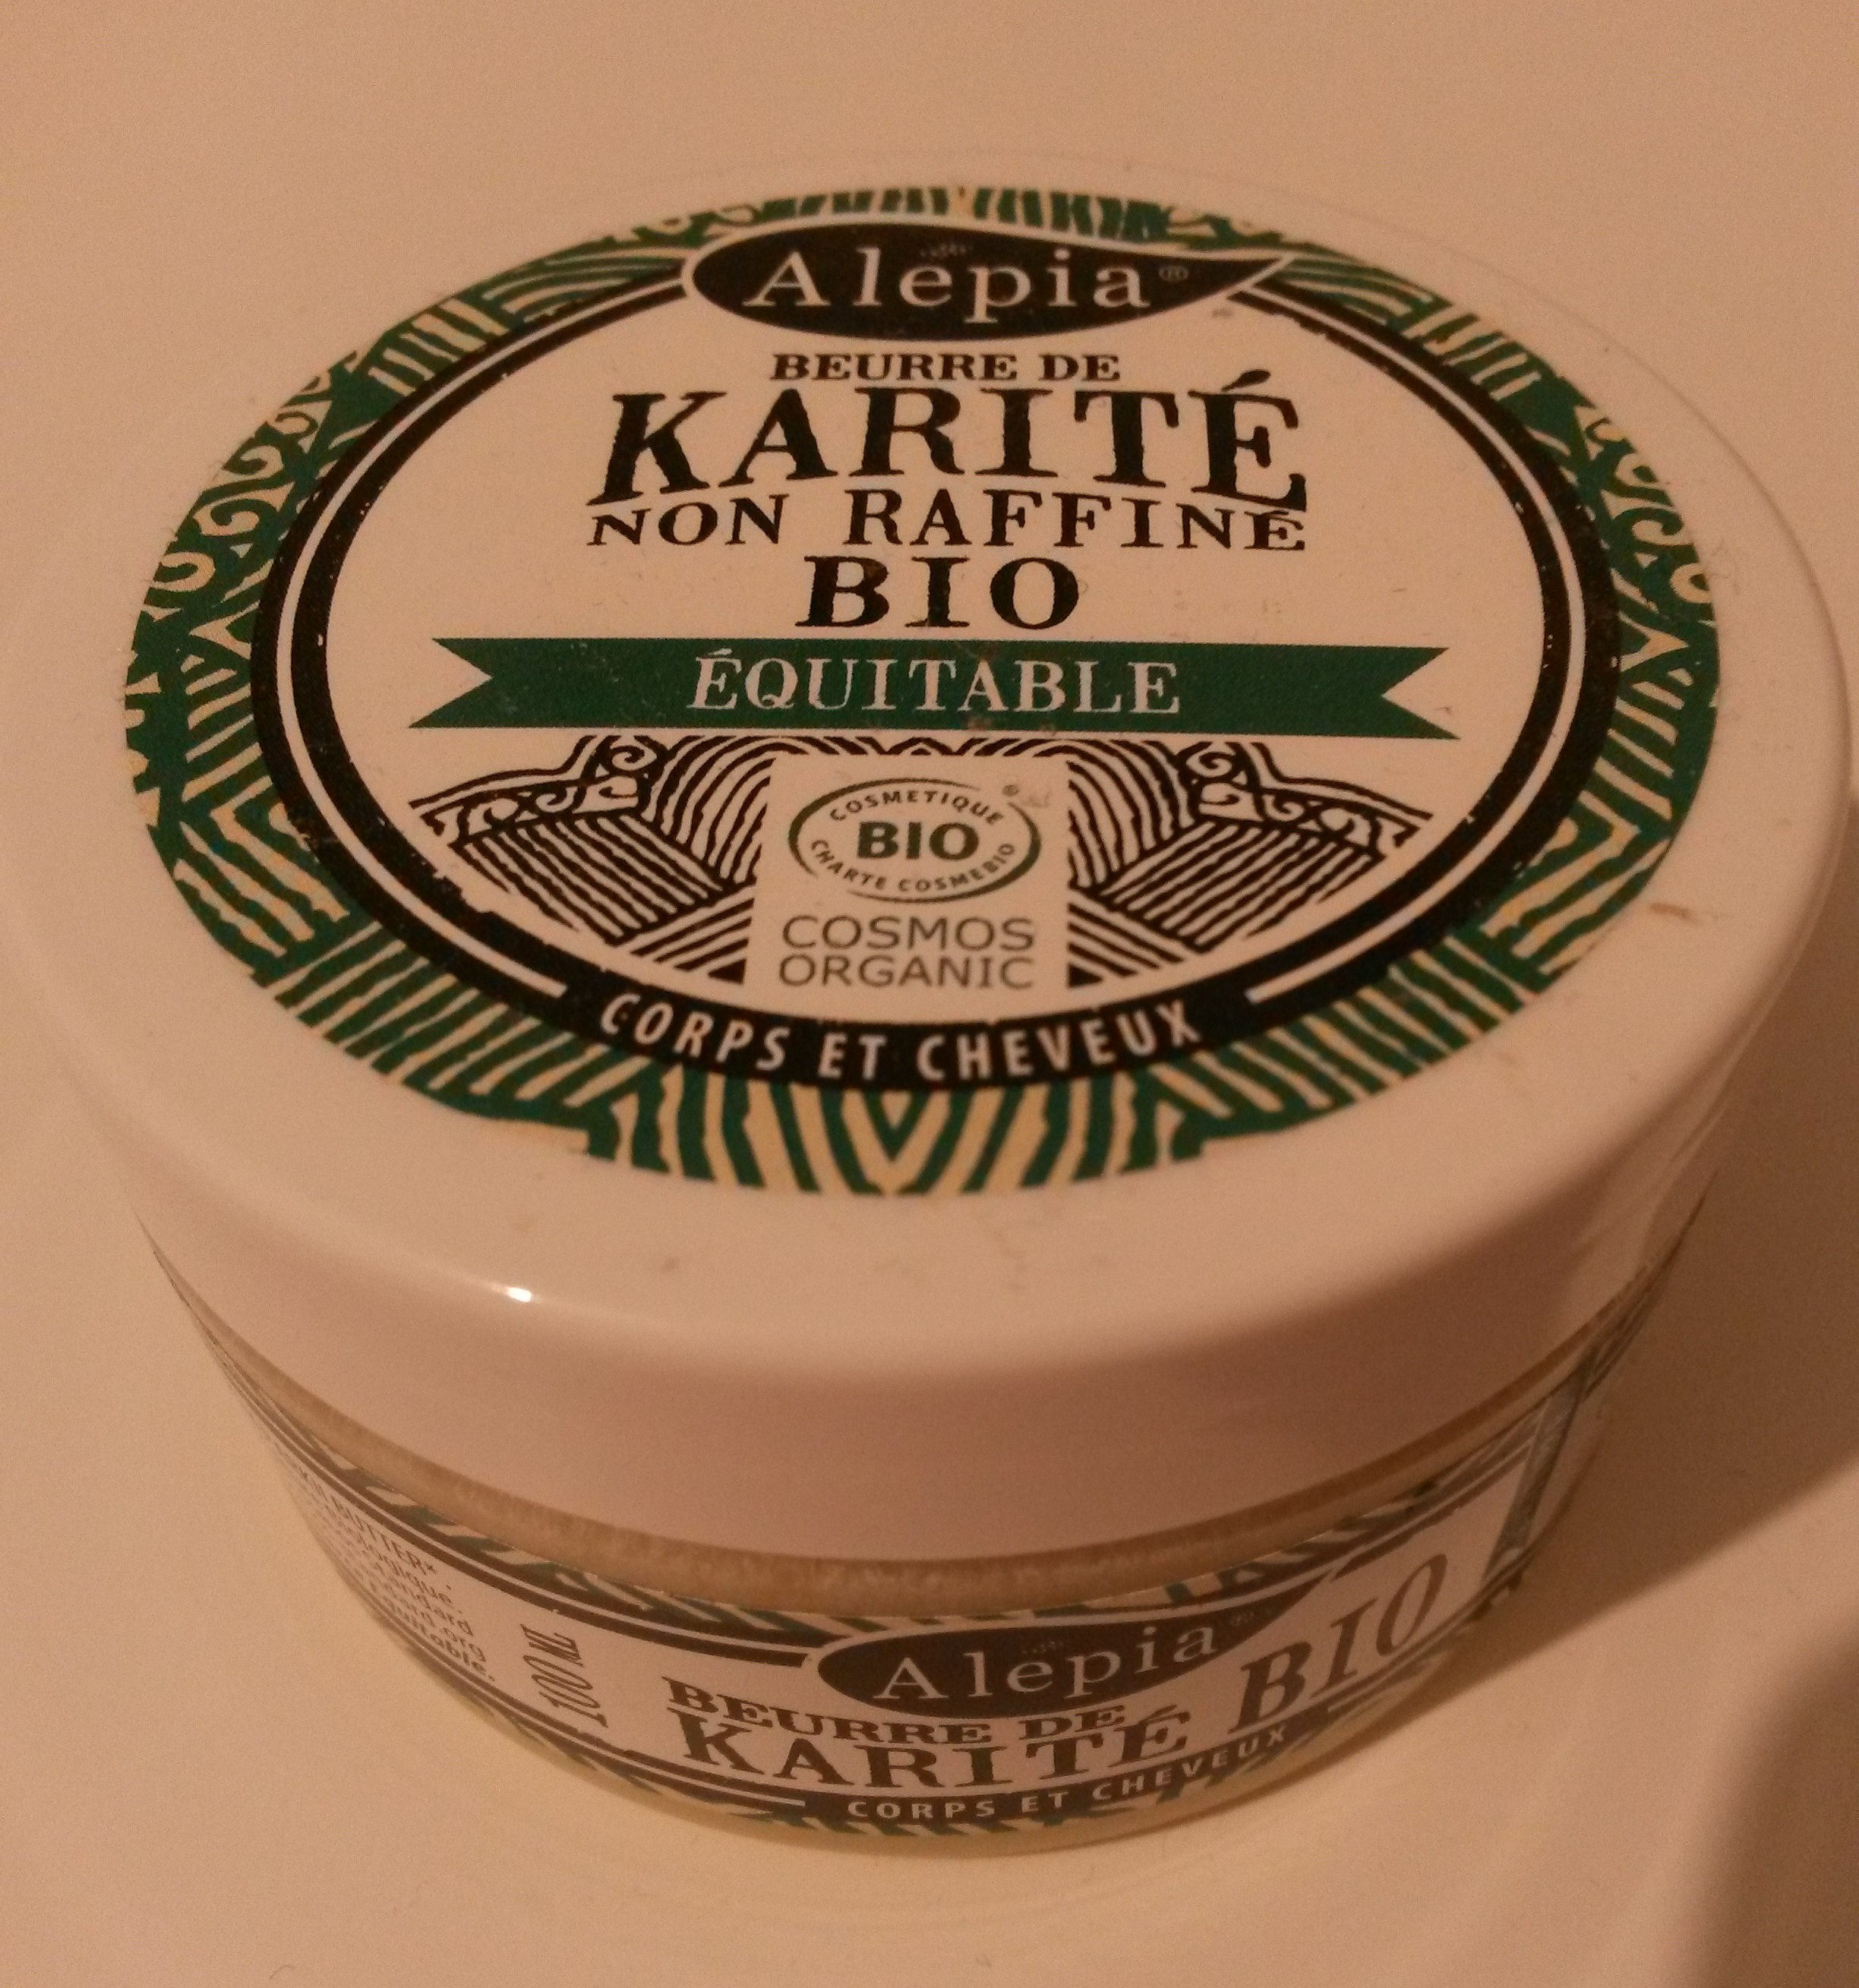 Beurre de karité - non raffiné, bio, équitable - 製品 - fr